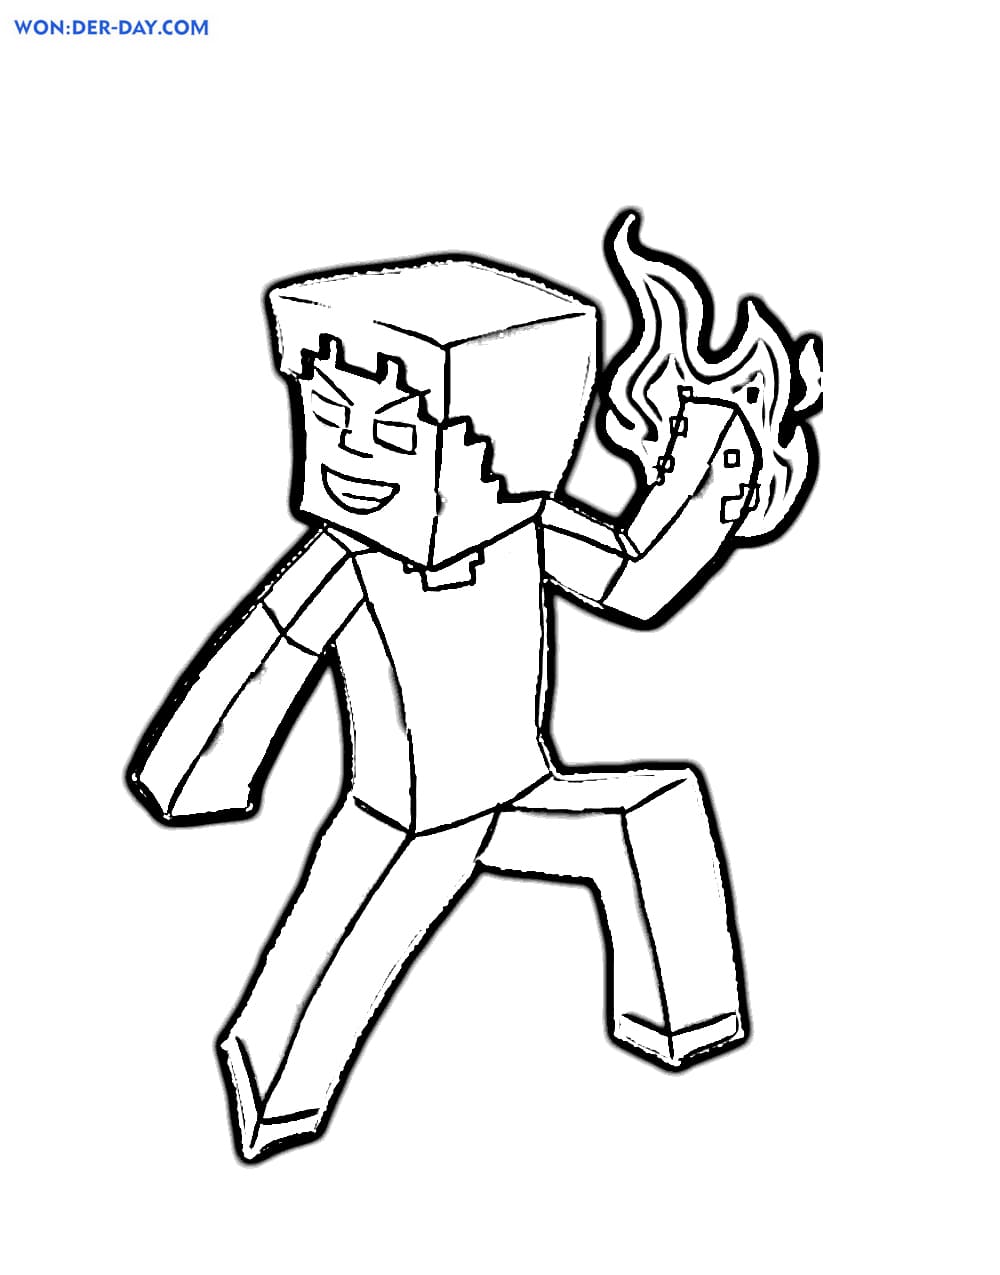 Херобрин – загадочный и таинственный персонаж популярной видеоигры Майнкрафт